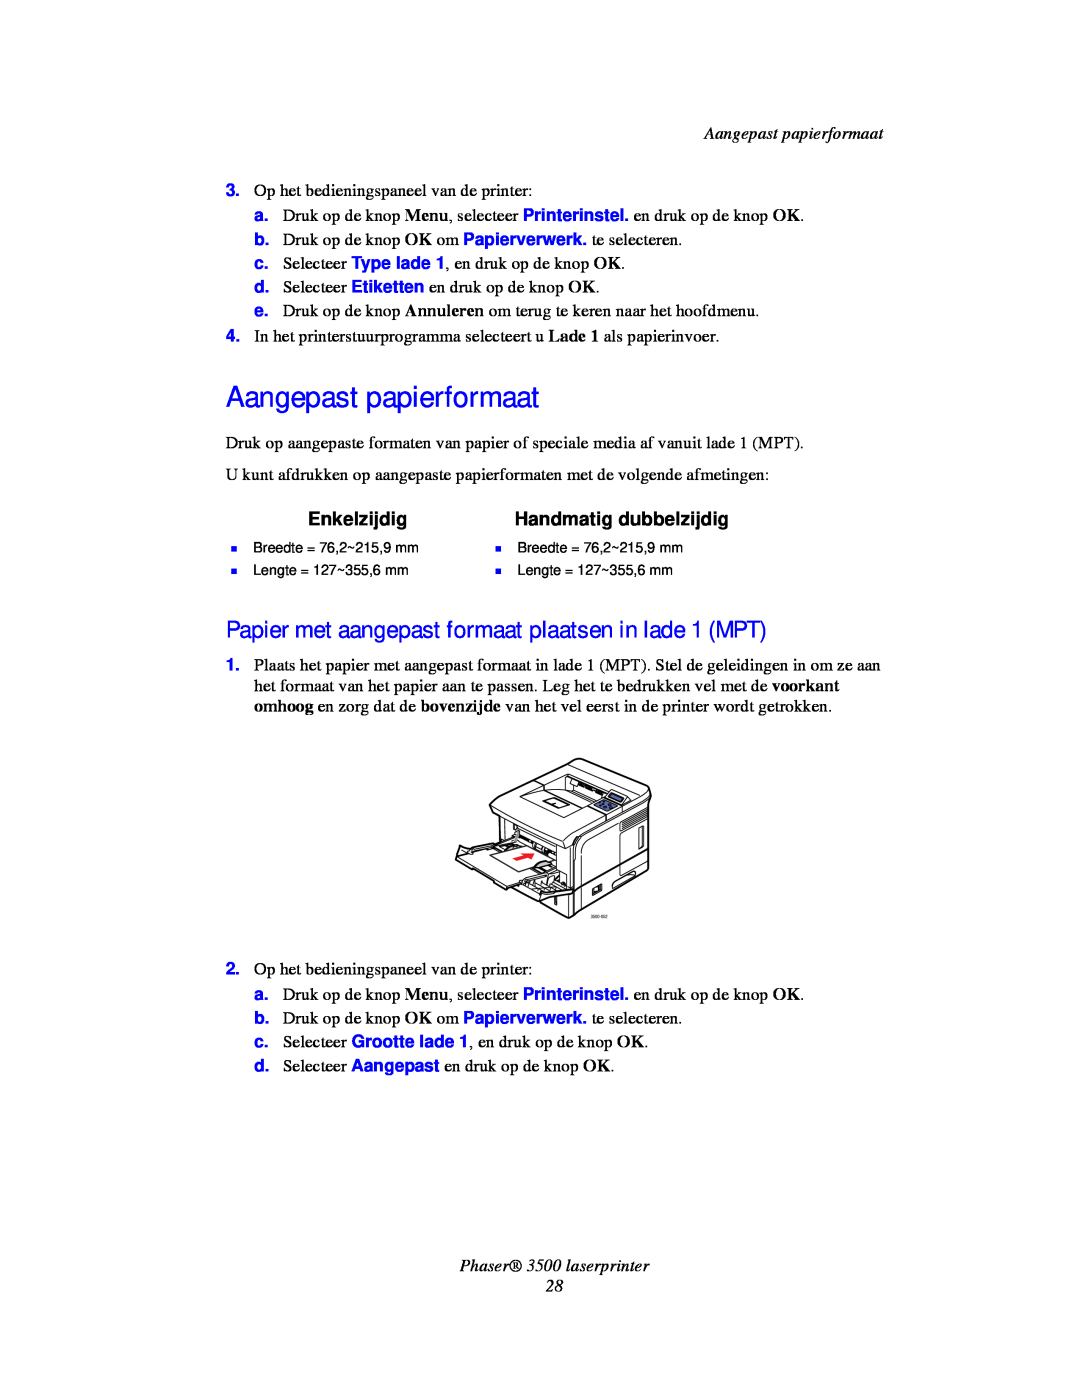 Xerox manual Aangepast papierformaat, Enkelzijdig, Handmatig dubbelzijdig, Phaser 3500 laserprinter 